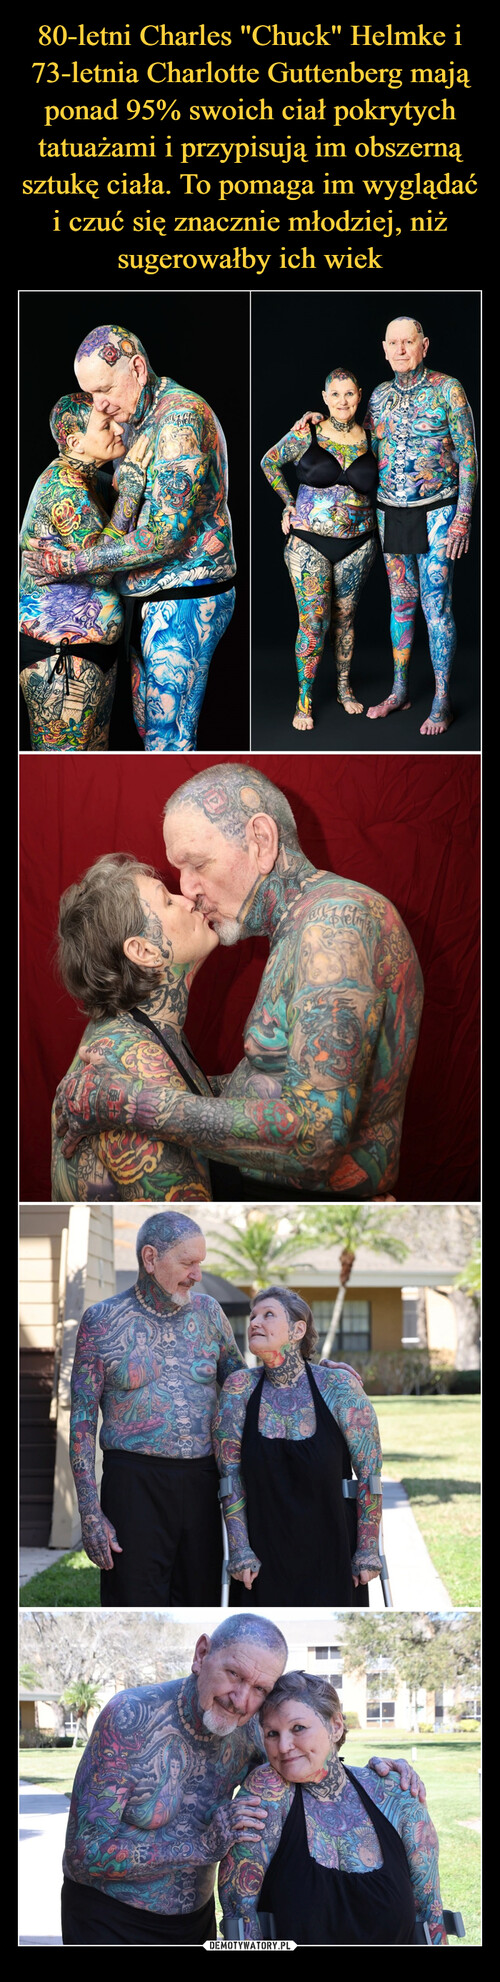 80-letni Charles "Chuck" Helmke i 73-letnia Charlotte Guttenberg mają ponad 95% swoich ciał pokrytych tatuażami i przypisują im obszerną sztukę ciała. To pomaga im wyglądać i czuć się znacznie młodziej, niż sugerowałby ich wiek